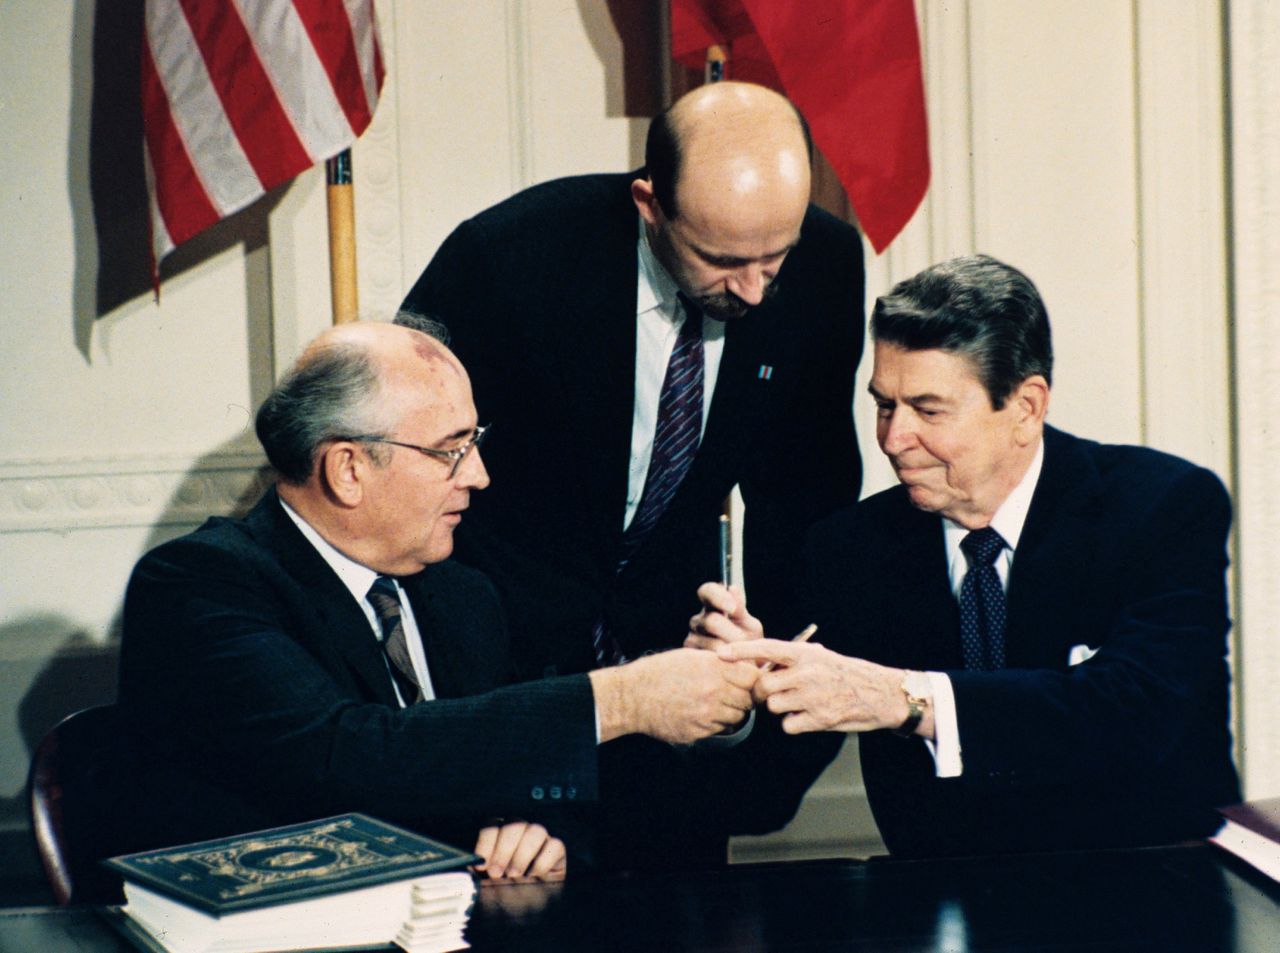 Ronald Reagan (rechts) en Michail Gorbatsjov wisselen pennen uit tijdens de ondertekening van het Intermediate Range Nuclear Forces Treaty (INF) in december 1987 op het Witte Huis